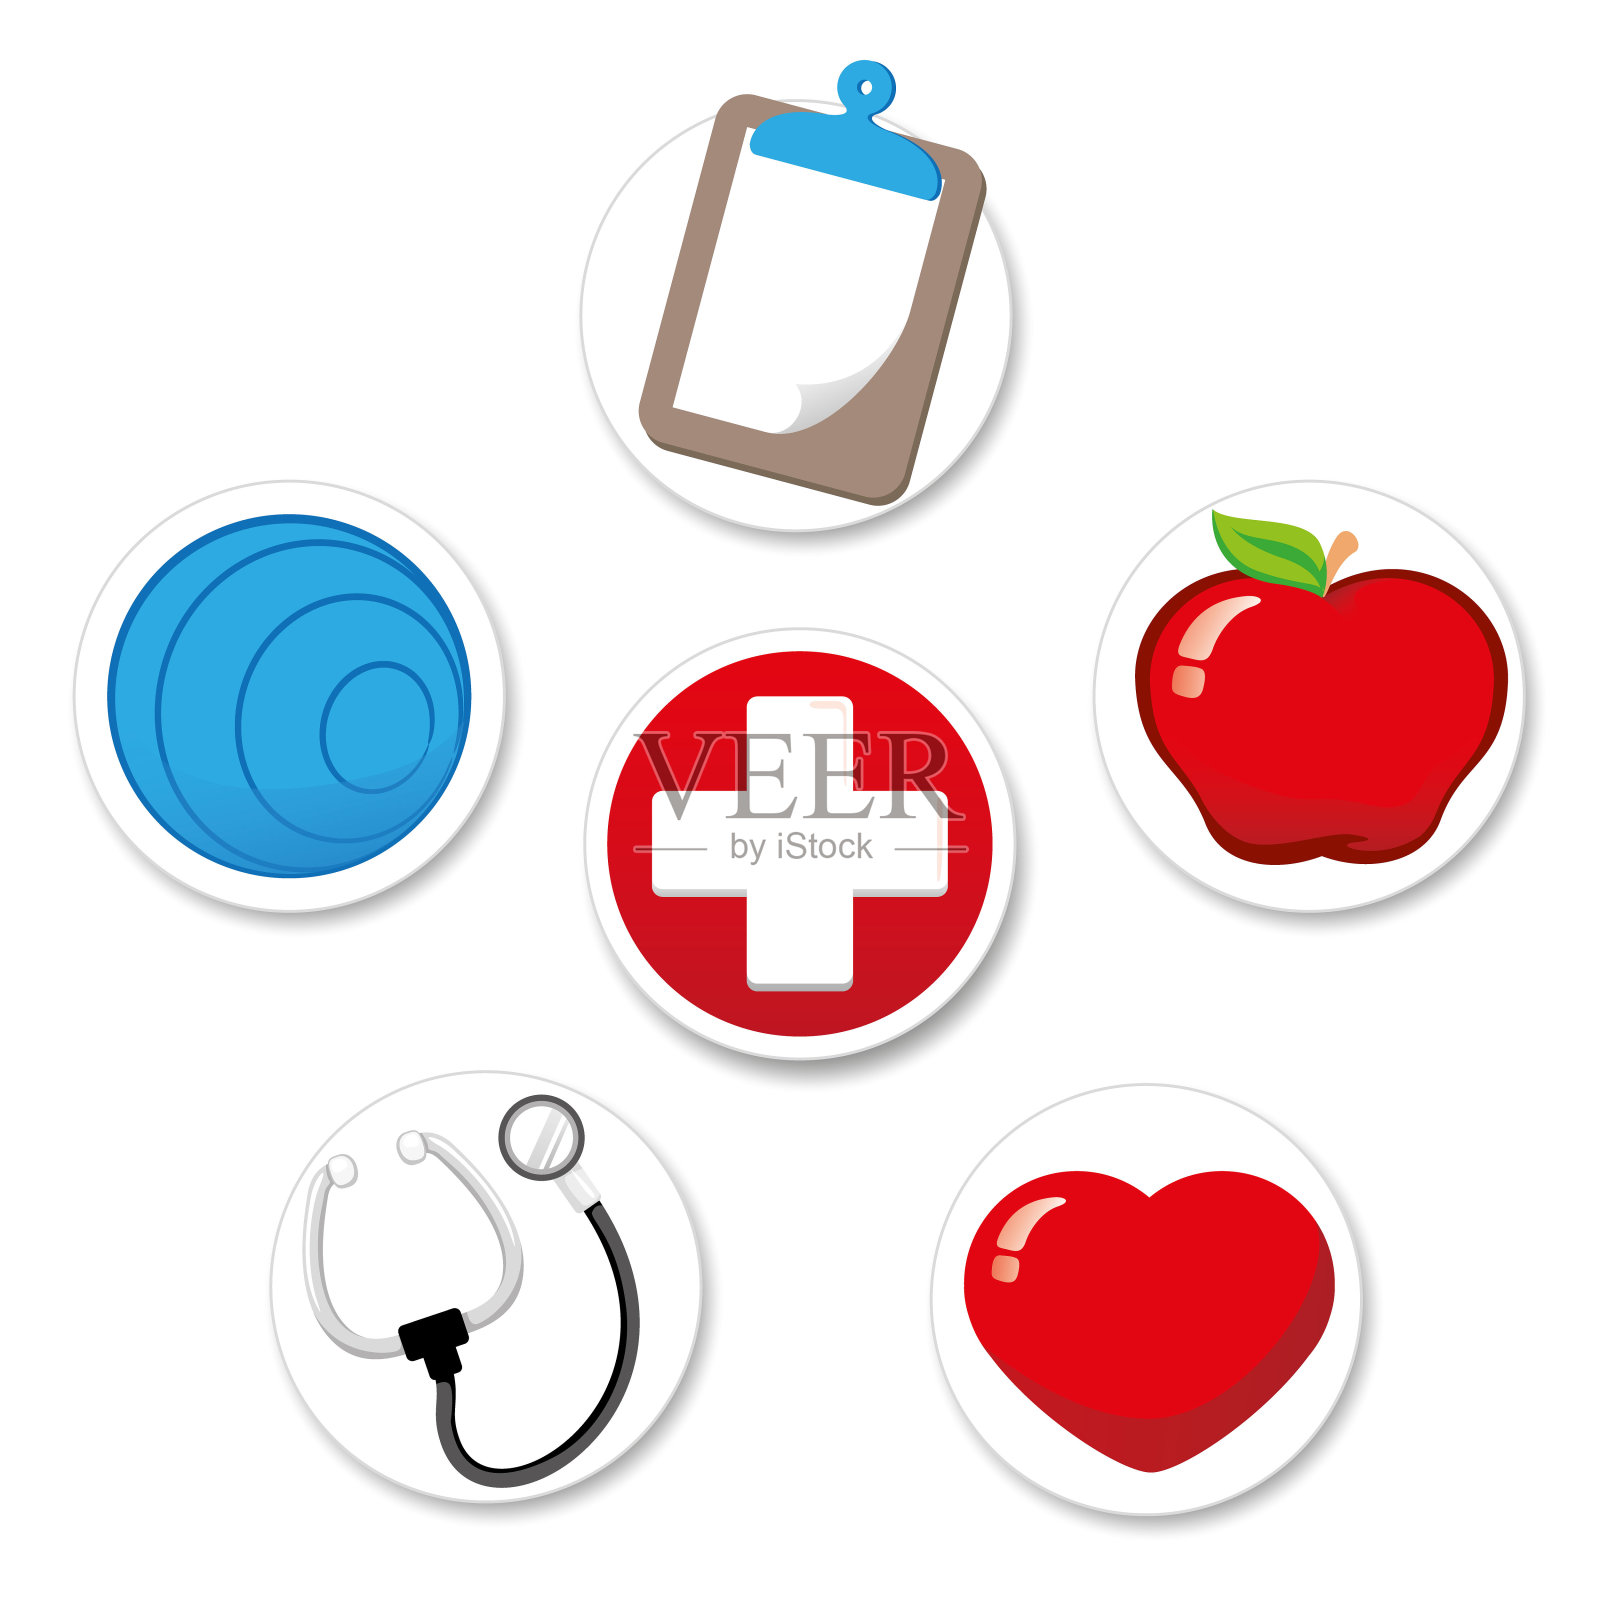 650/5000代表福利和健康的图标。普拉提，医院，苹果，心脏，剪贴板和听诊器。理想的医疗和机构材料图标素材